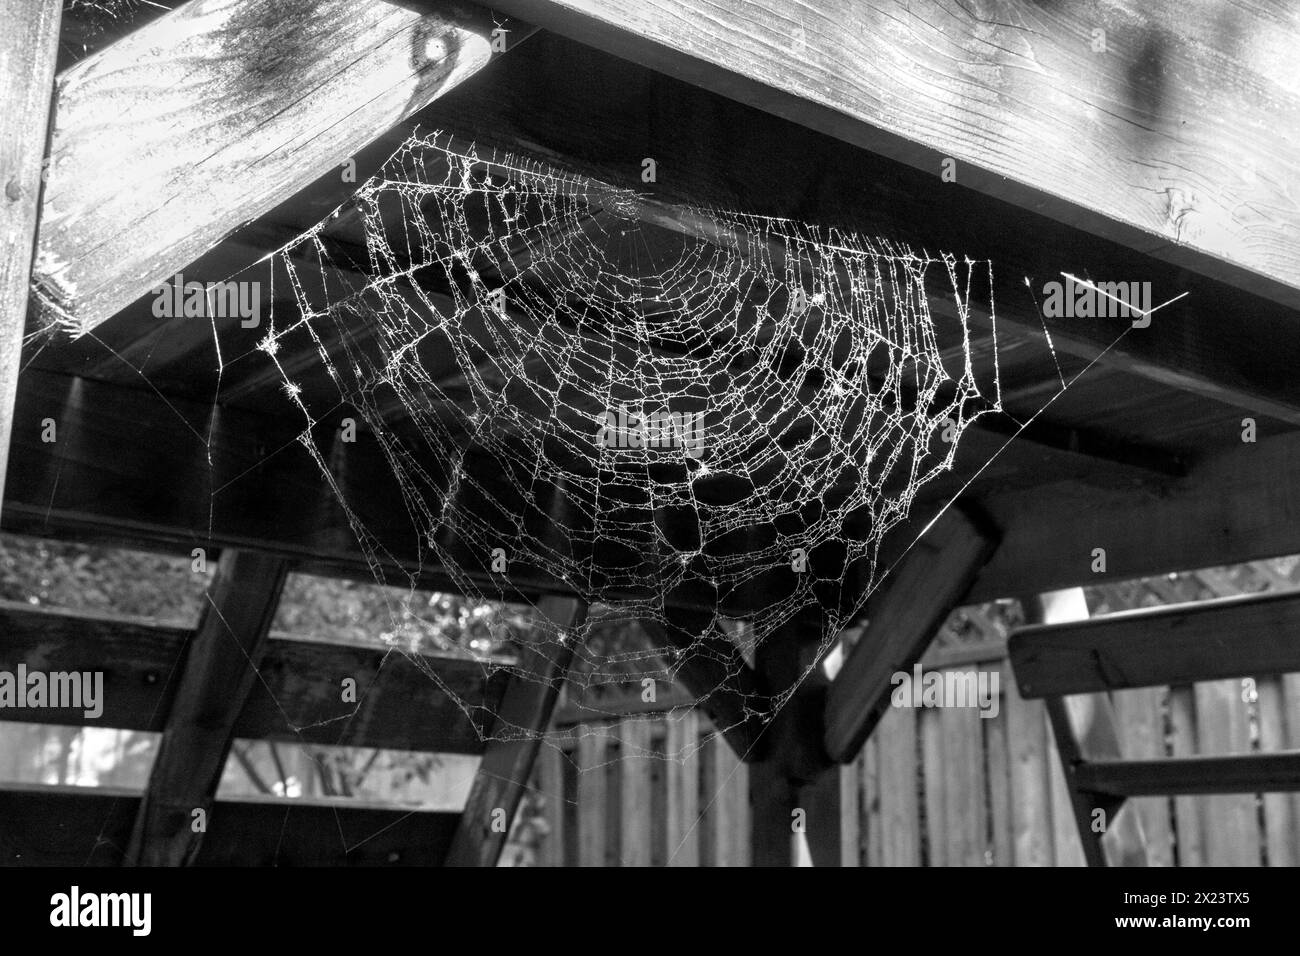 Spinnennetz unter einer Spielplatzstruktur in Schwarz-weiß. Stockfoto